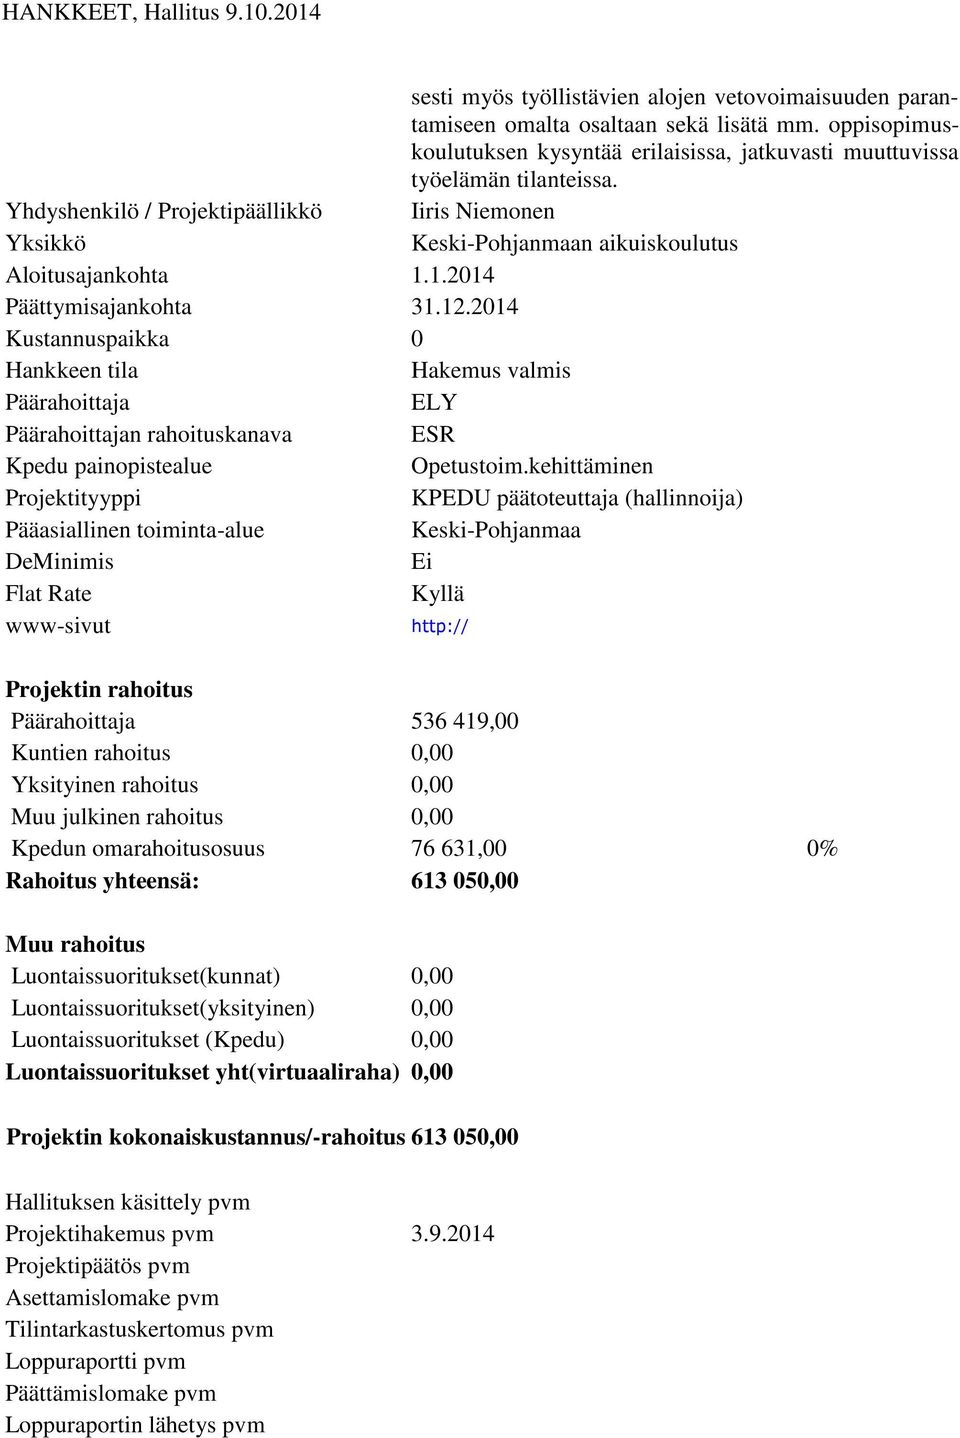 1.2014 Päättymisajankohta 31.12.2014 Kustannuspaikka 0 Hakemus valmis ELY n rahoituskanava ESR Opetustoim.